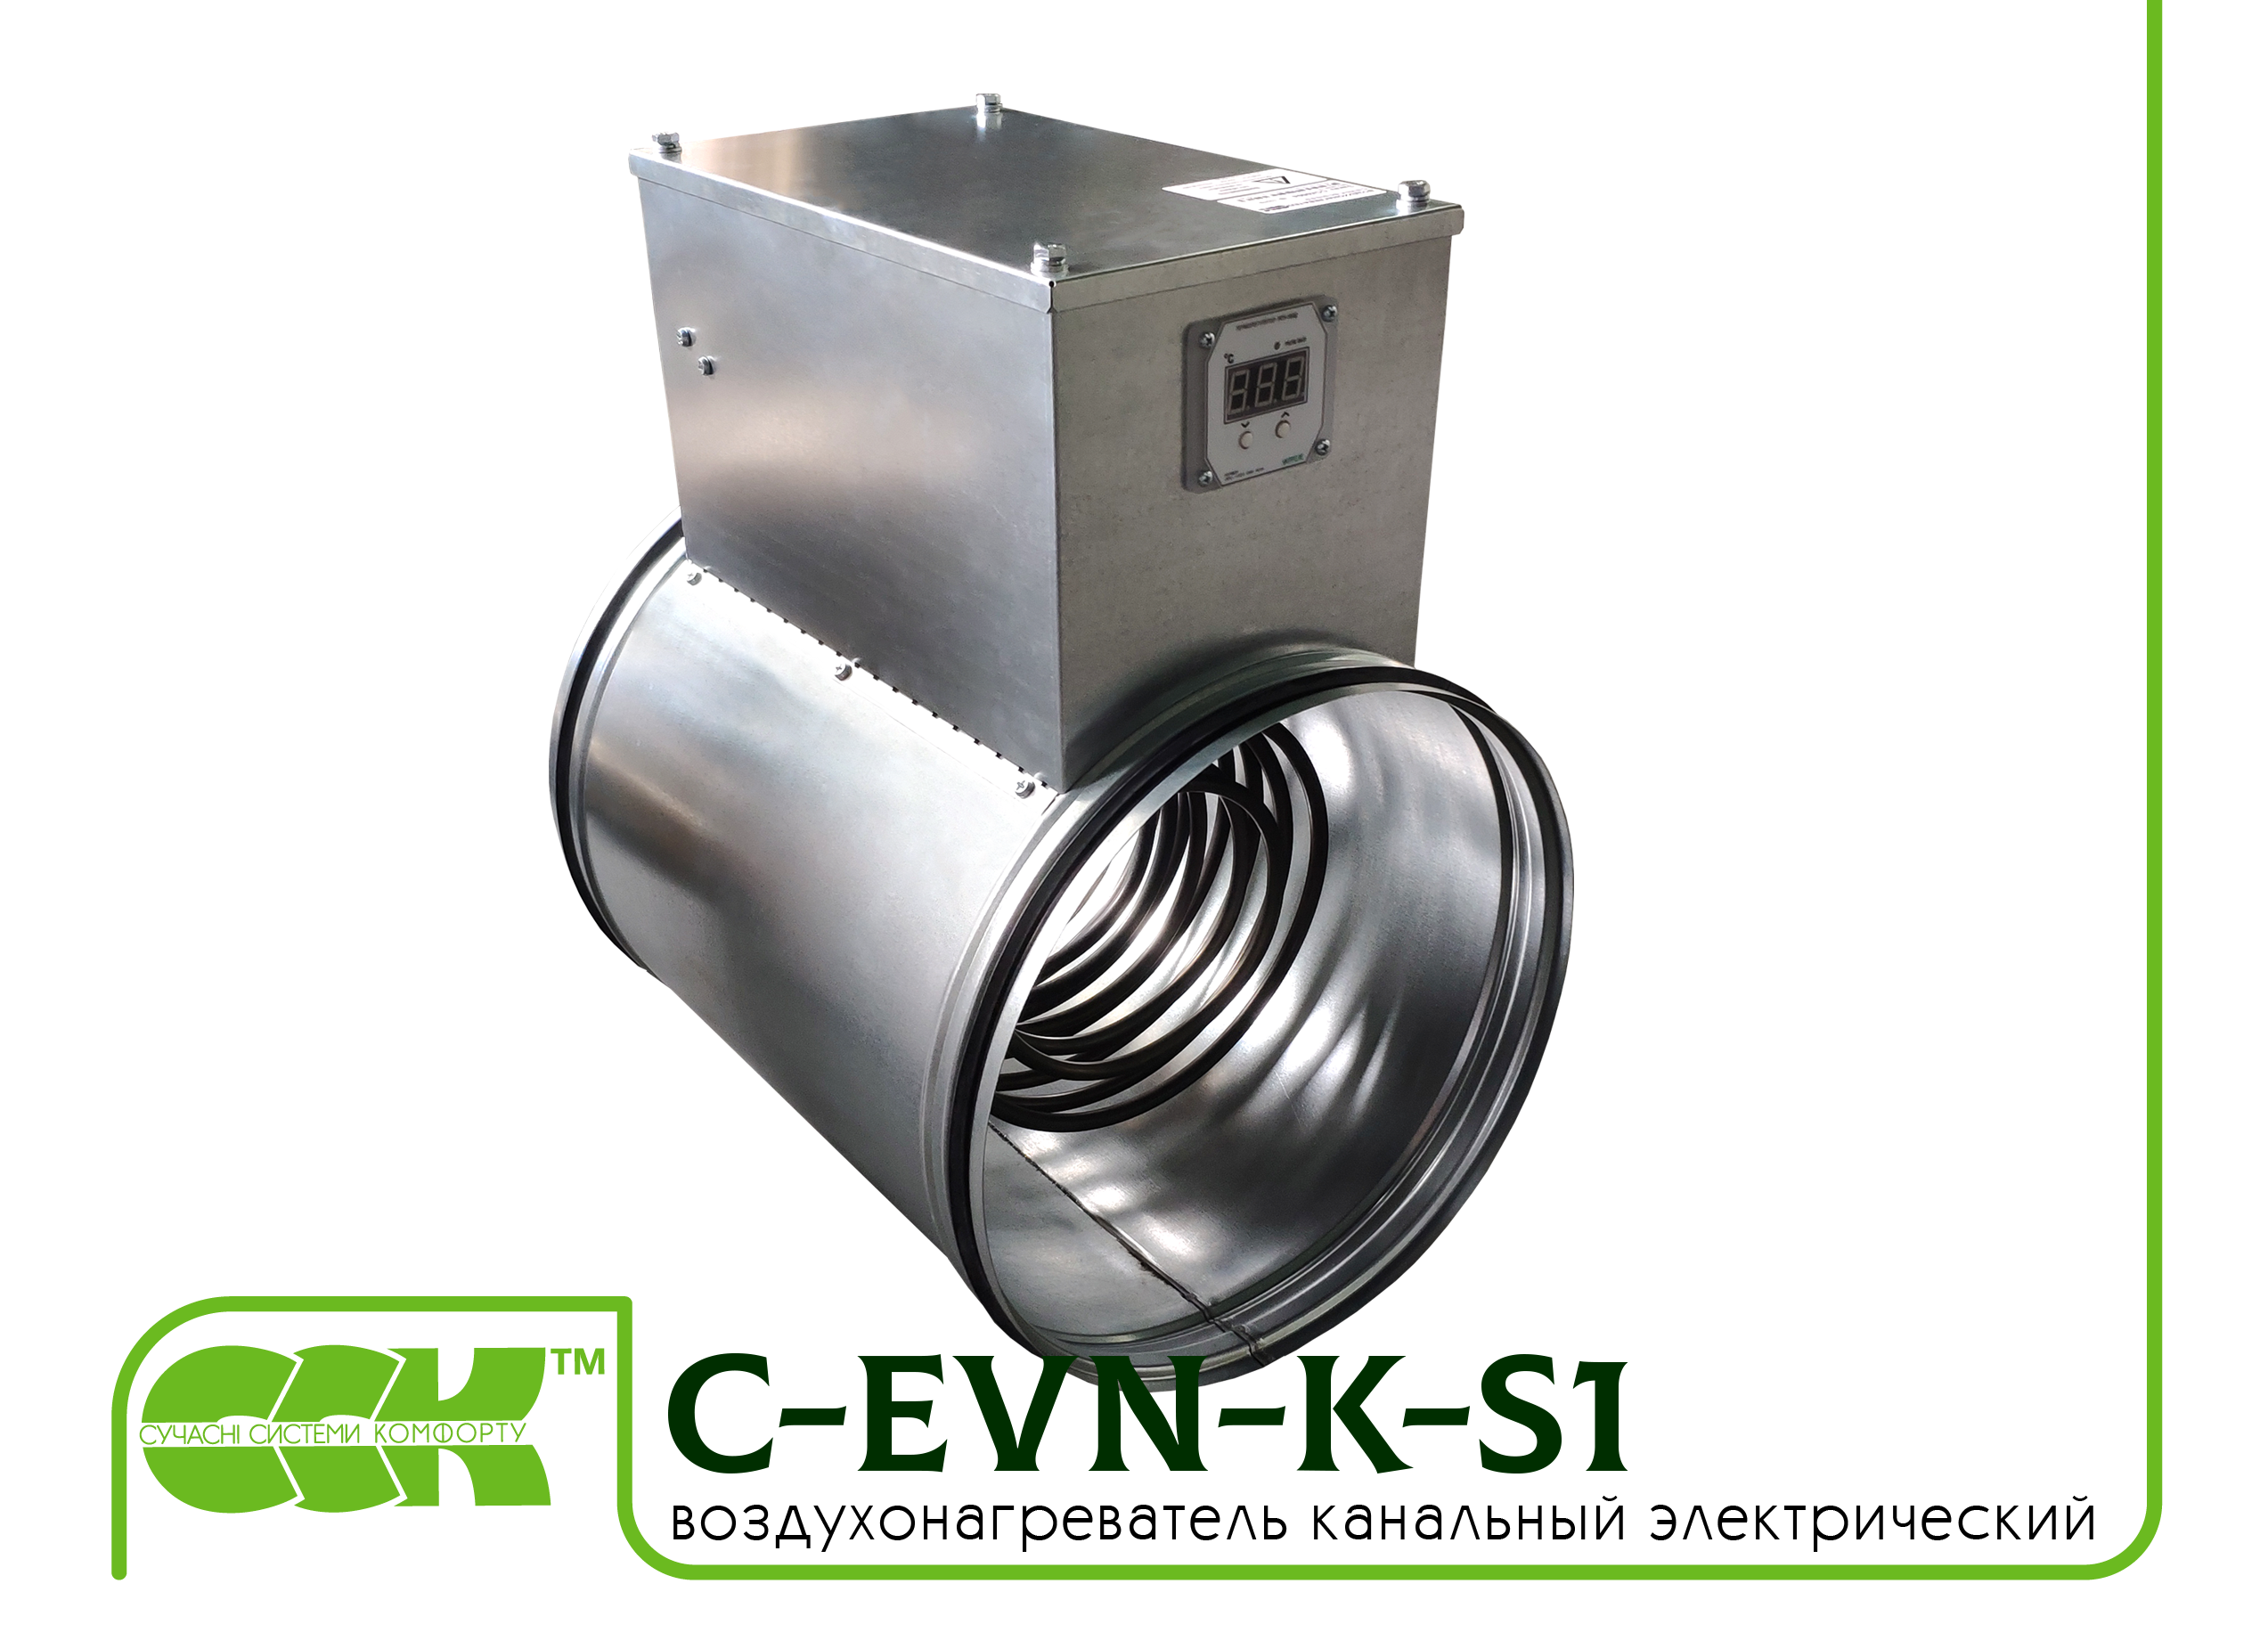 Воздухонагреватель канальный электрический для круглых каналов C-EVN-K-S1-250-6,0